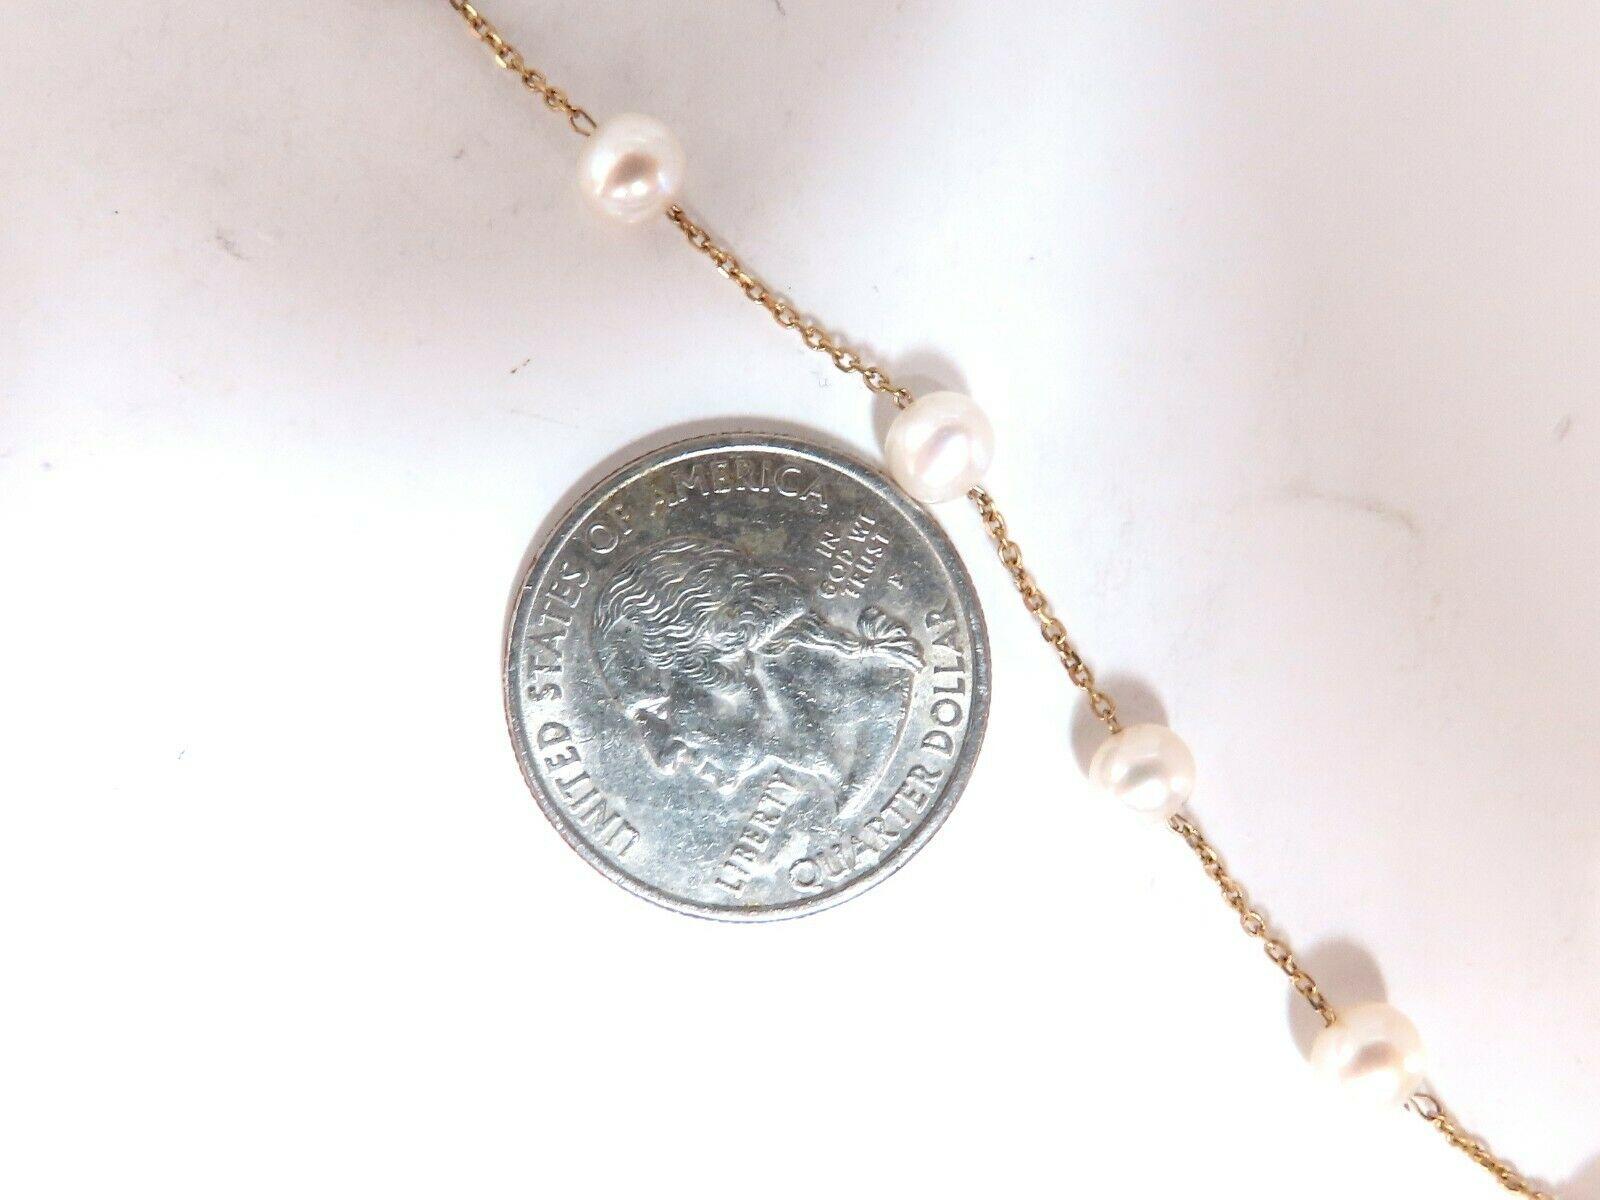 5.collier de perles d'eau douce naturelles de 6 mm
Qualité AAA

 16 pouces de long.

or jaune 14kt

Poids total : 4,9 grammes